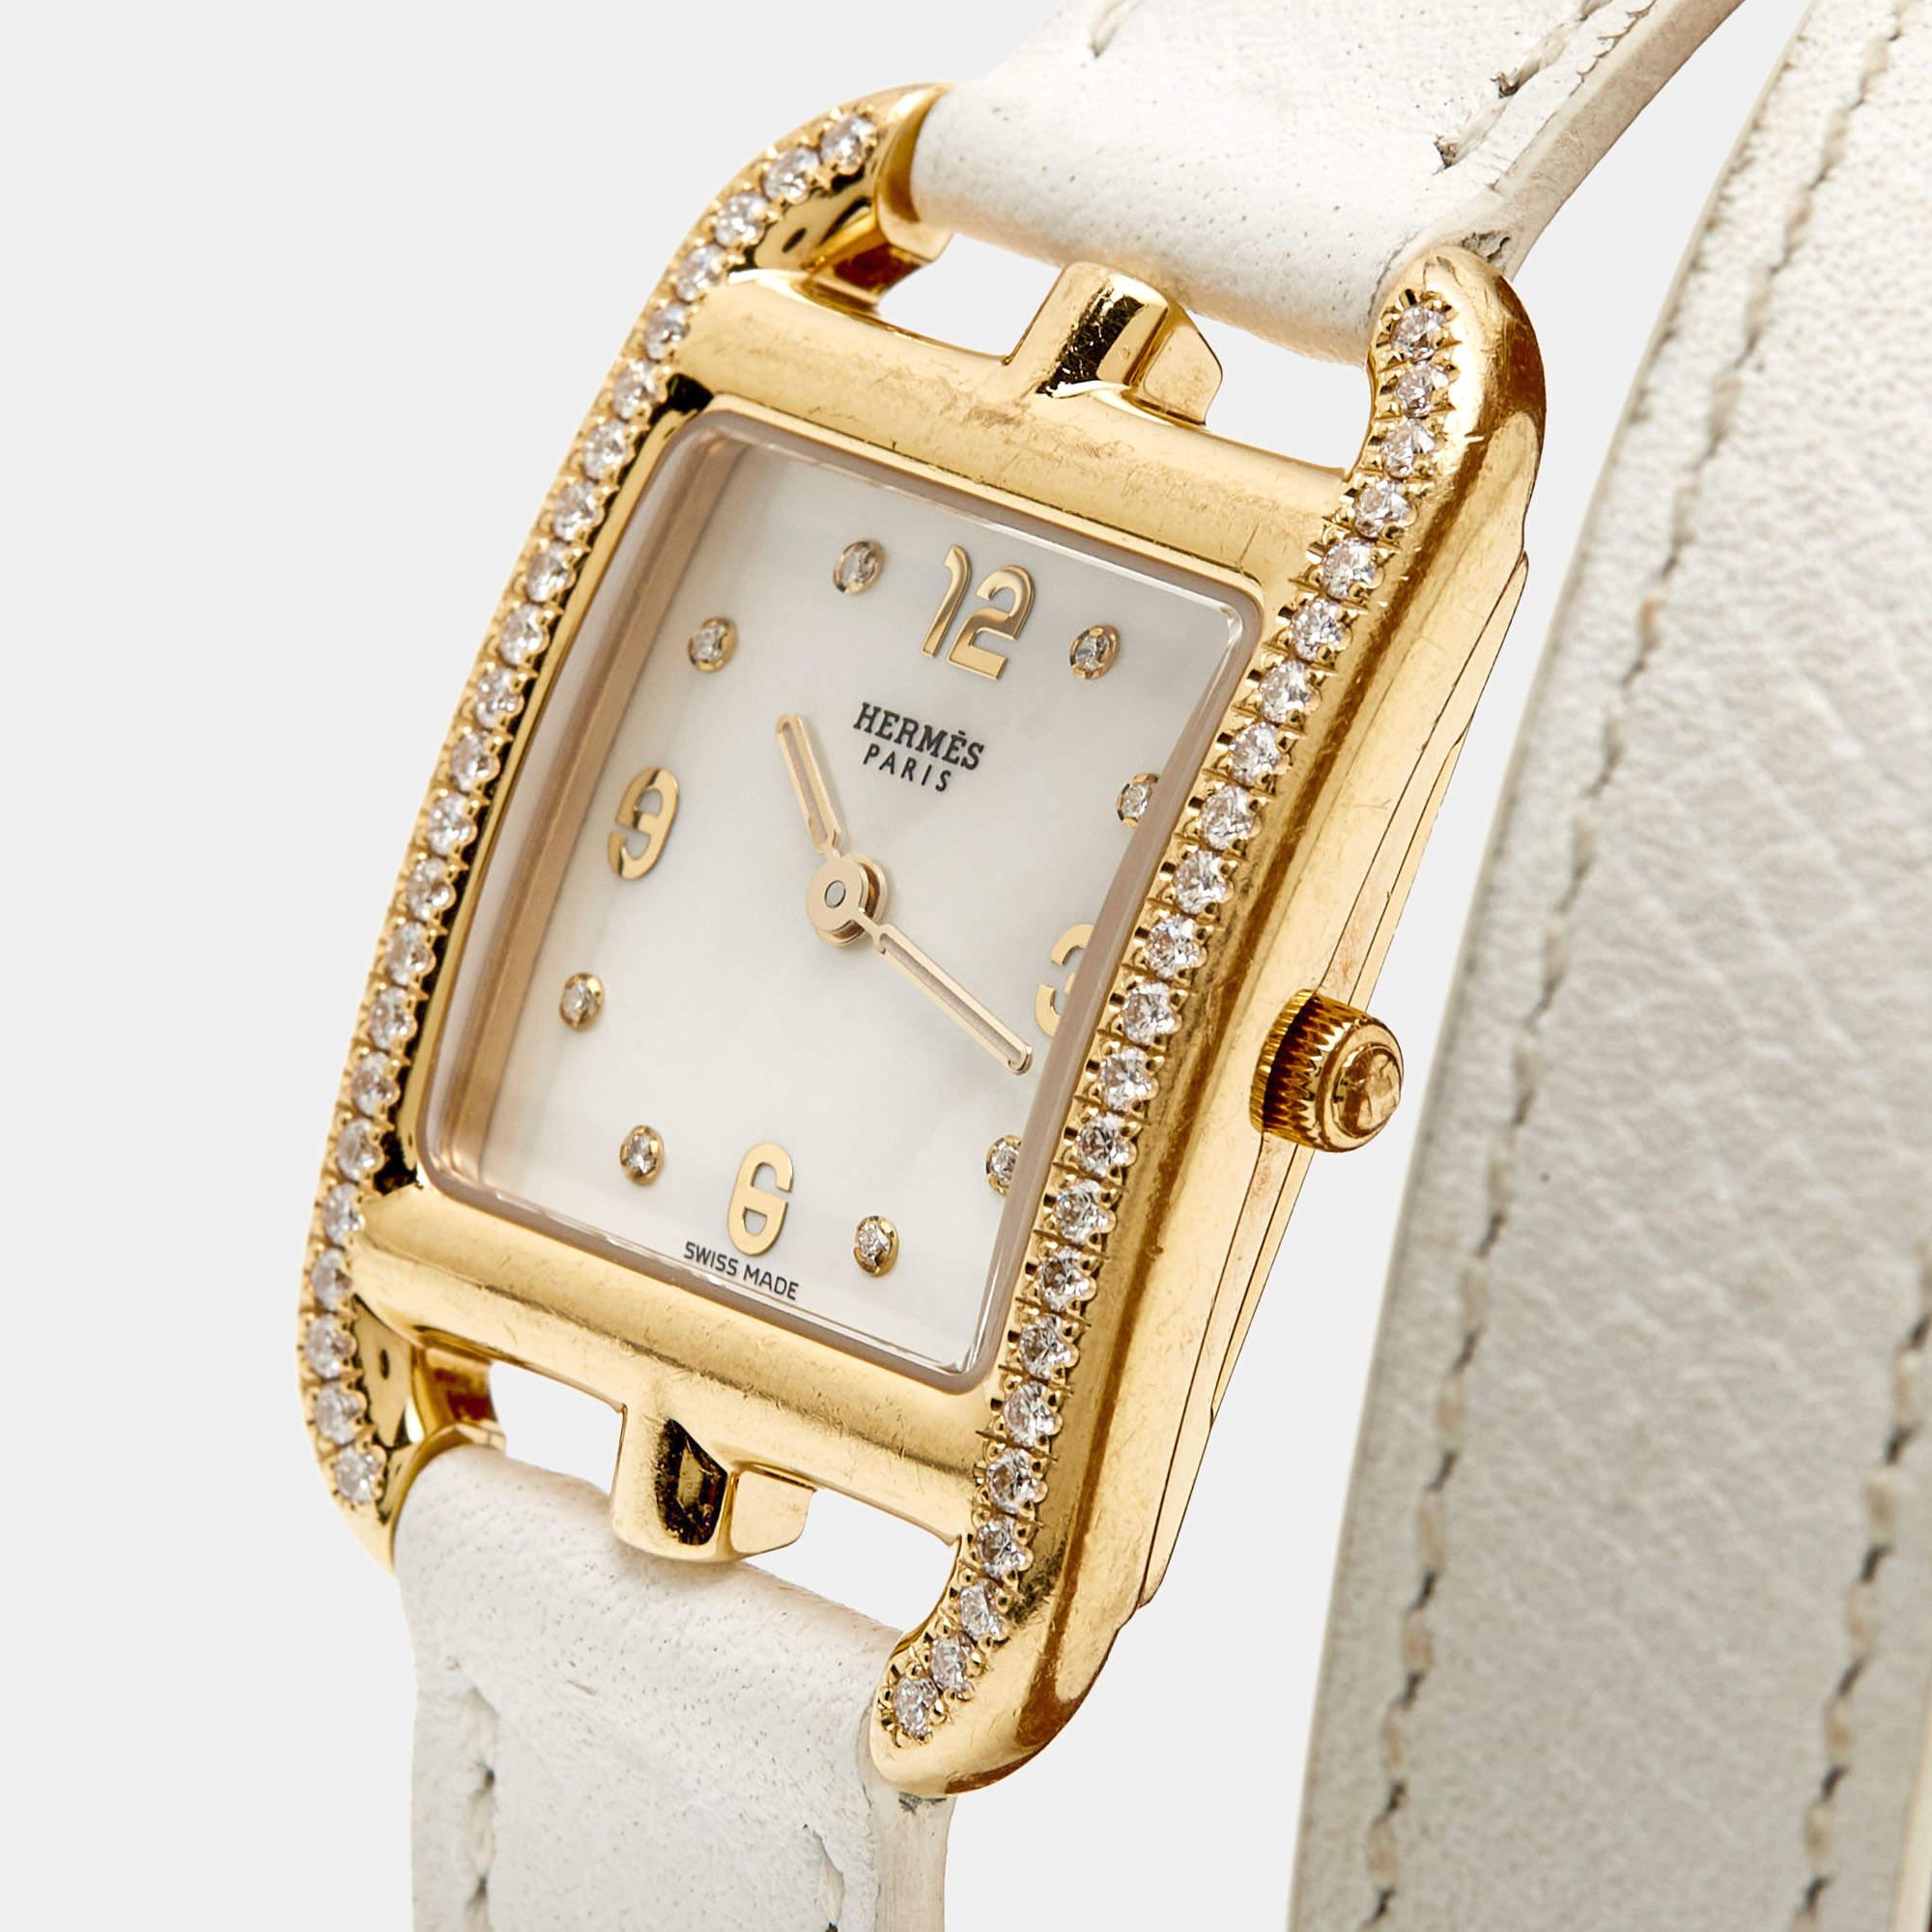 Cette montre-bracelet pour femme de la marque Hermes ajoutera une touche de luxe à votre style de tous les jours. Réalisée en or jaune 18 carats, elle est dotée d'un cadran en nacre et d'une parfaite addition de diamants qui rehaussent sa beauté. La